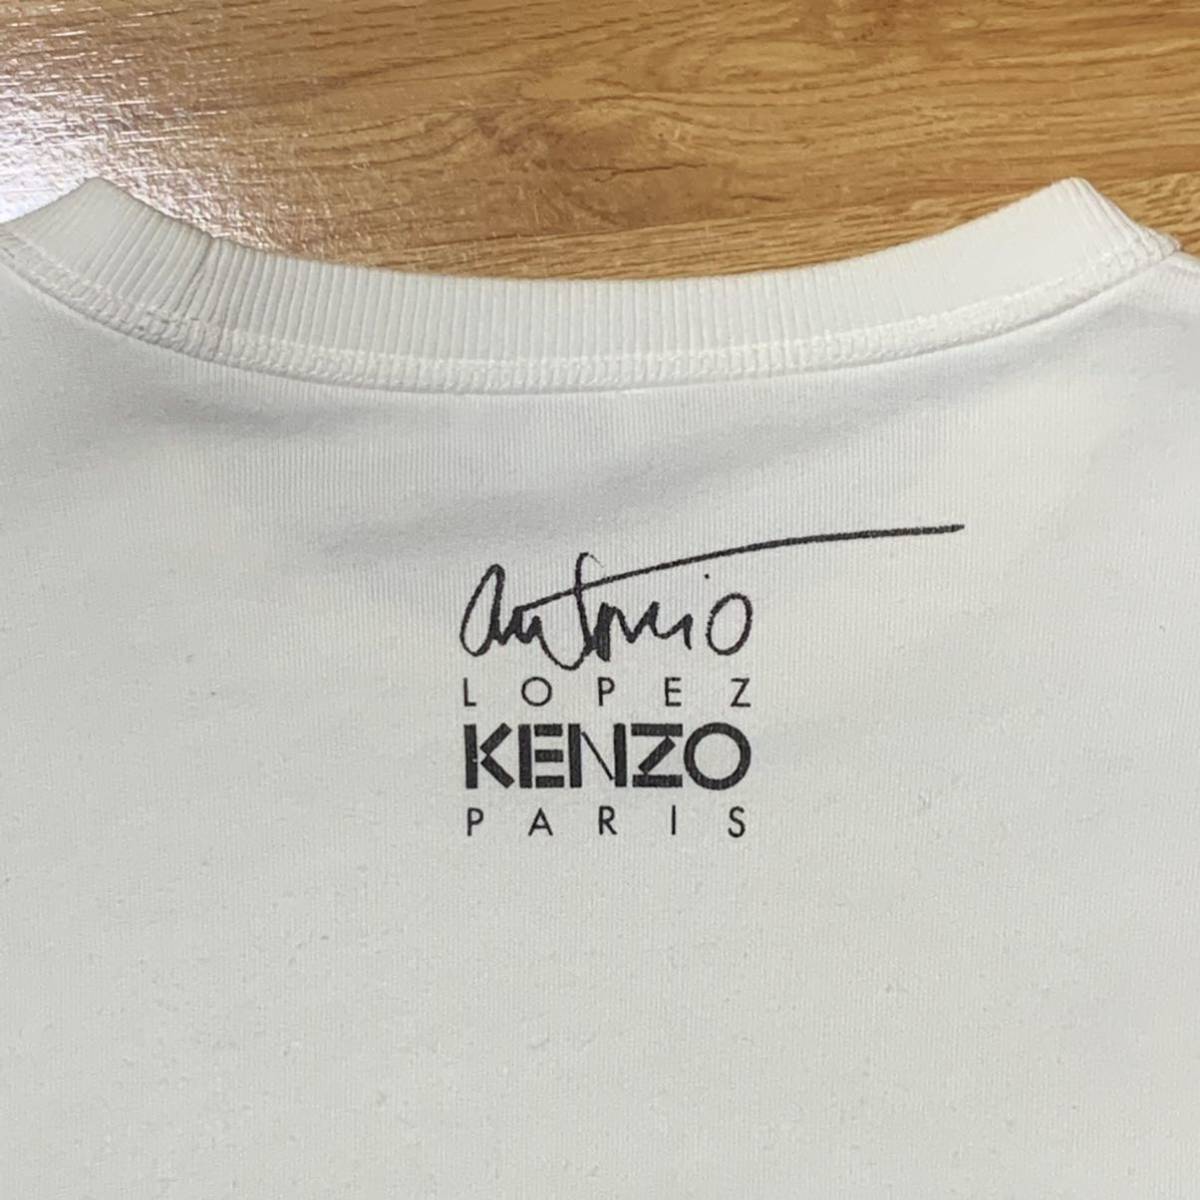 KENZO × Antonio Lopez graphic paris スウェット 転写 プリント